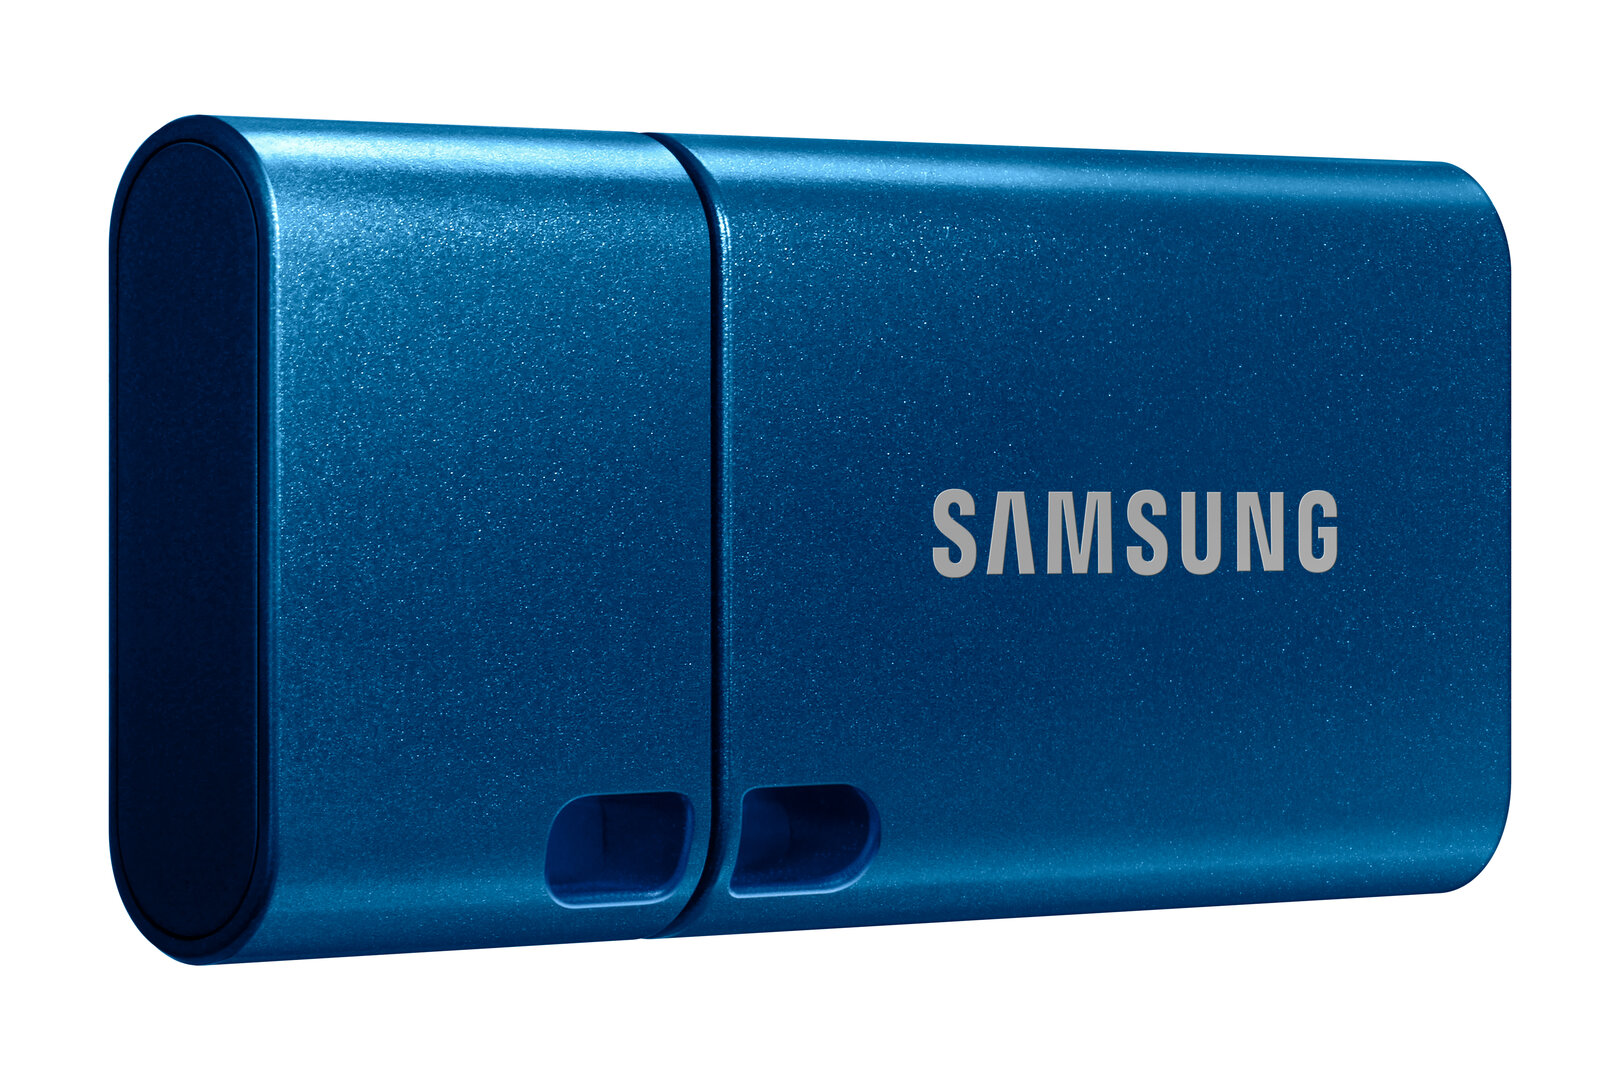 Samsung USB Flash Drive Type-C (MUF-256DA/APC)